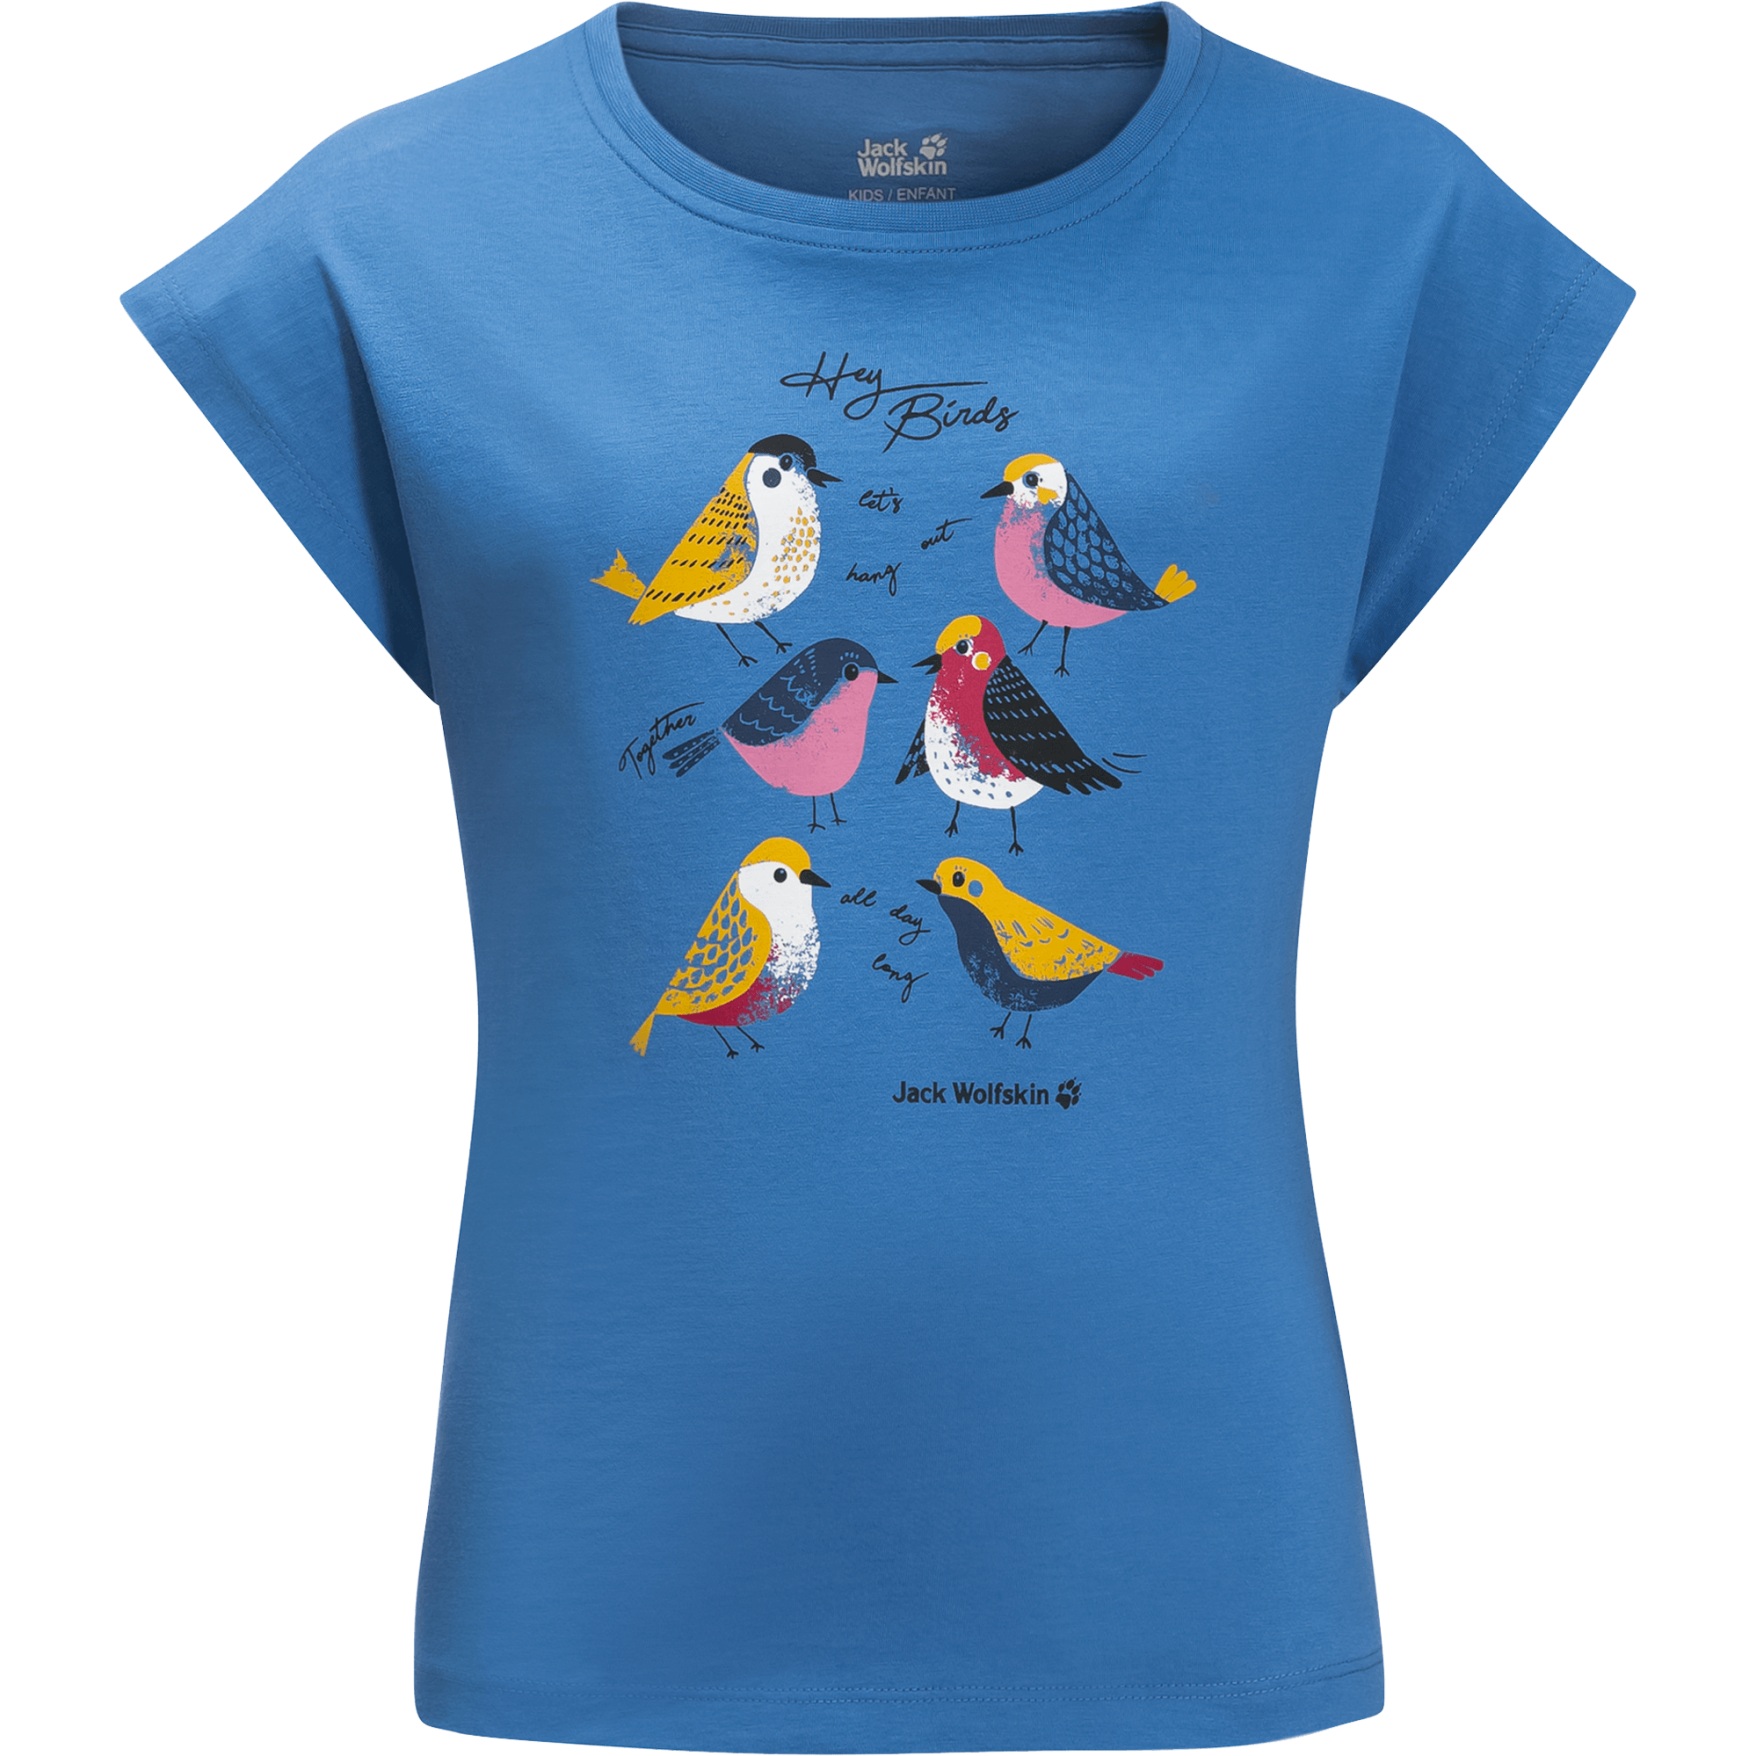 Produktbild von Jack Wolfskin Tweeting Birds Mädchen T-Shirt - wave blue